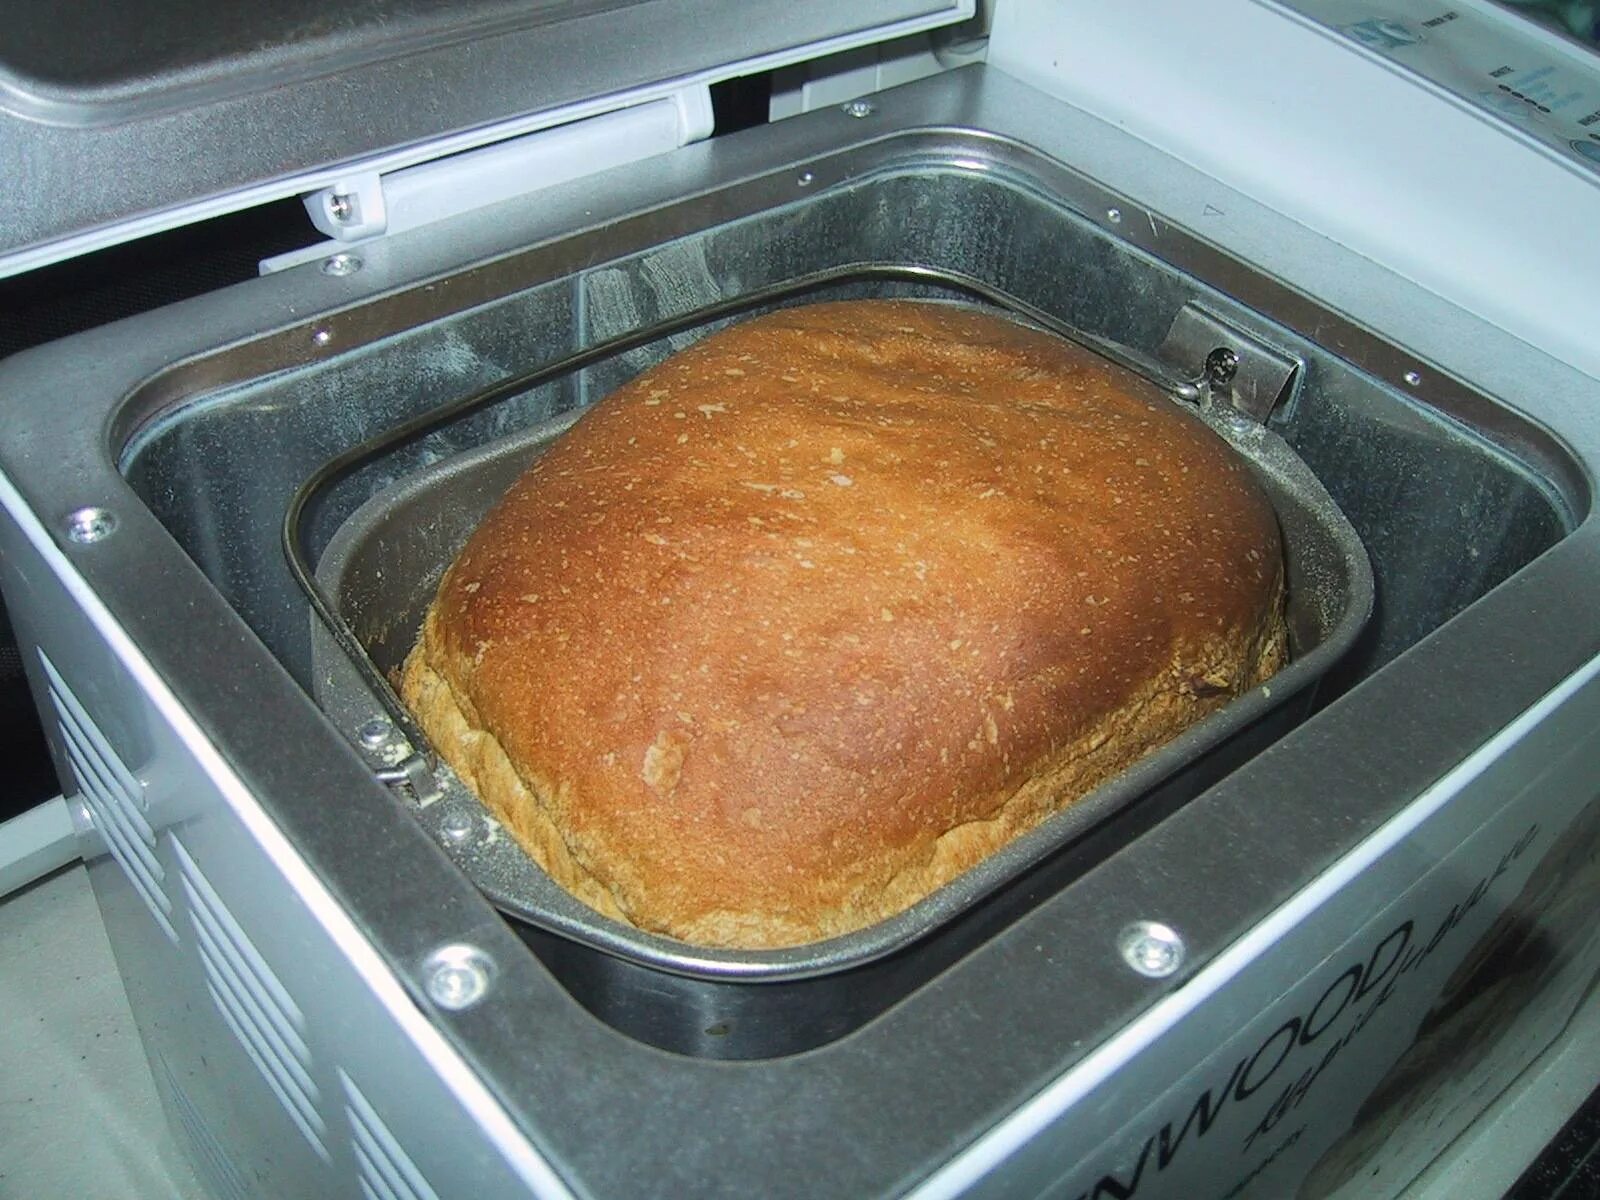 Хлеб в хлебопечке. Хлебопечка с хлебом. Выпечка хлеба в хлебопечке. Домашний хлеб из хлебопечки. Хлеб после духовки